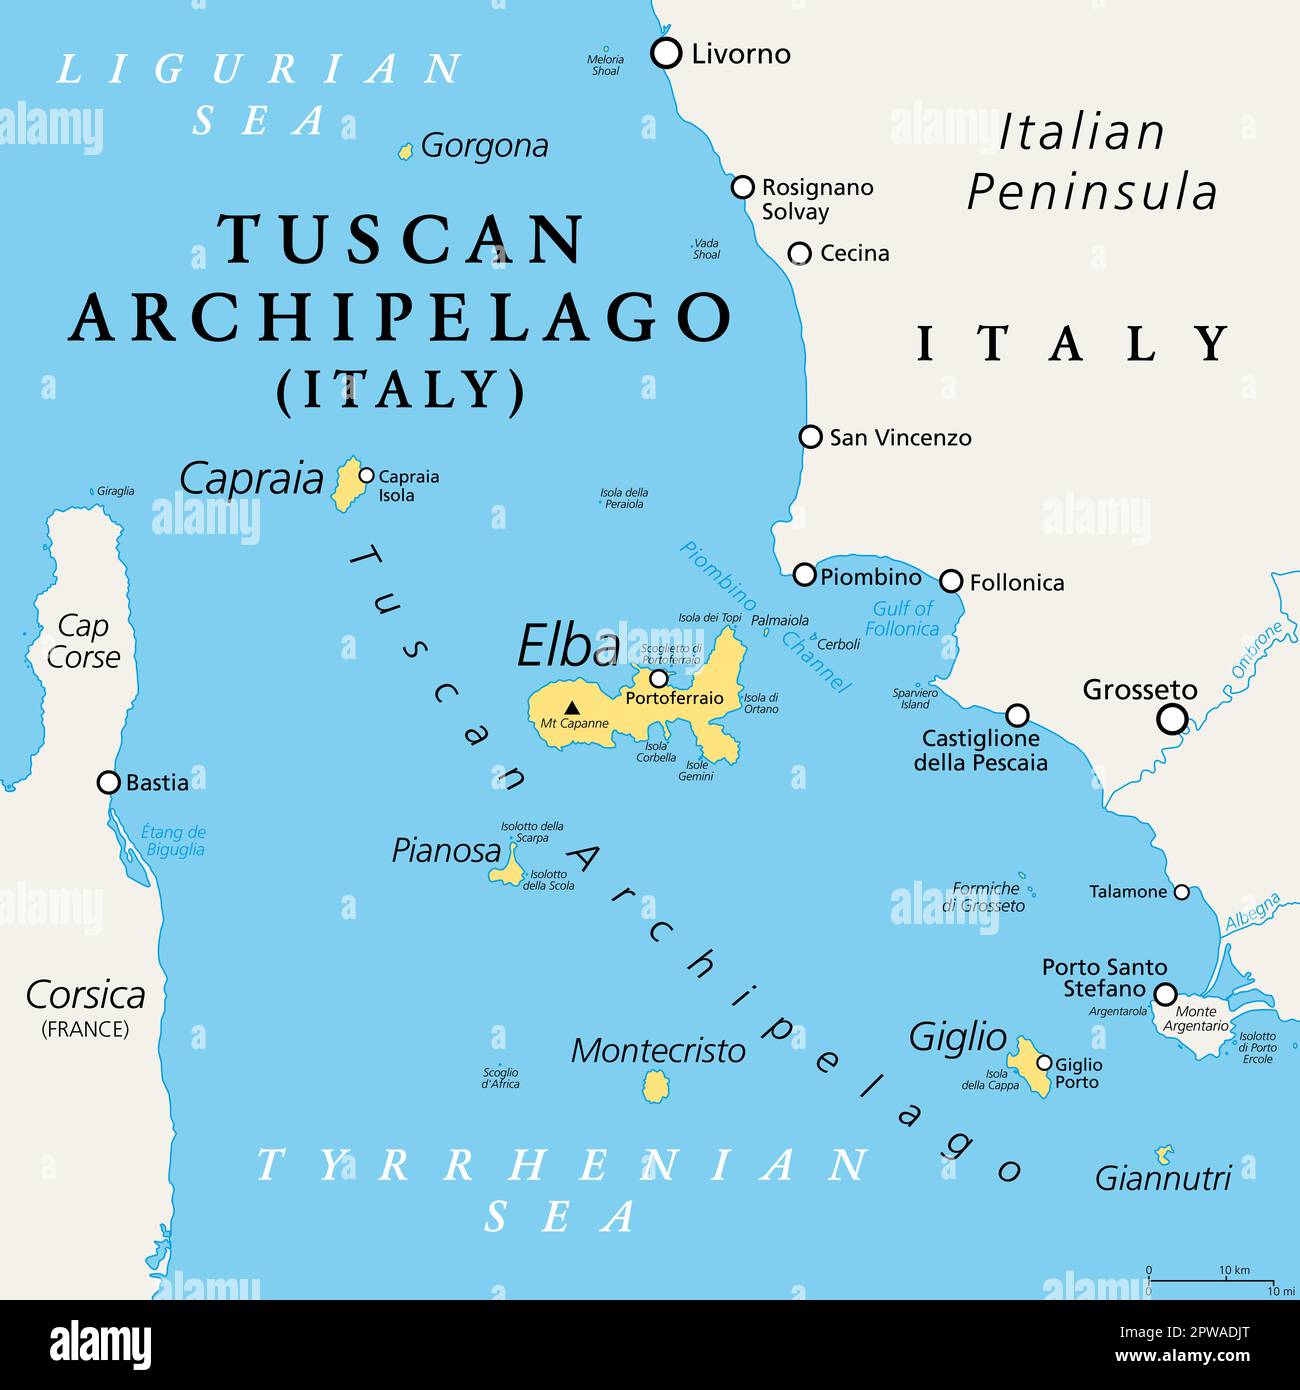 Toskana-Archipel, Italien, politische Karte. Inselkette zwischen dem Ligurischen und dem Tyrrhenischen Meer westlich der Toskana, zwischen Korsika und der italienischen Halbinsel. Stockfoto